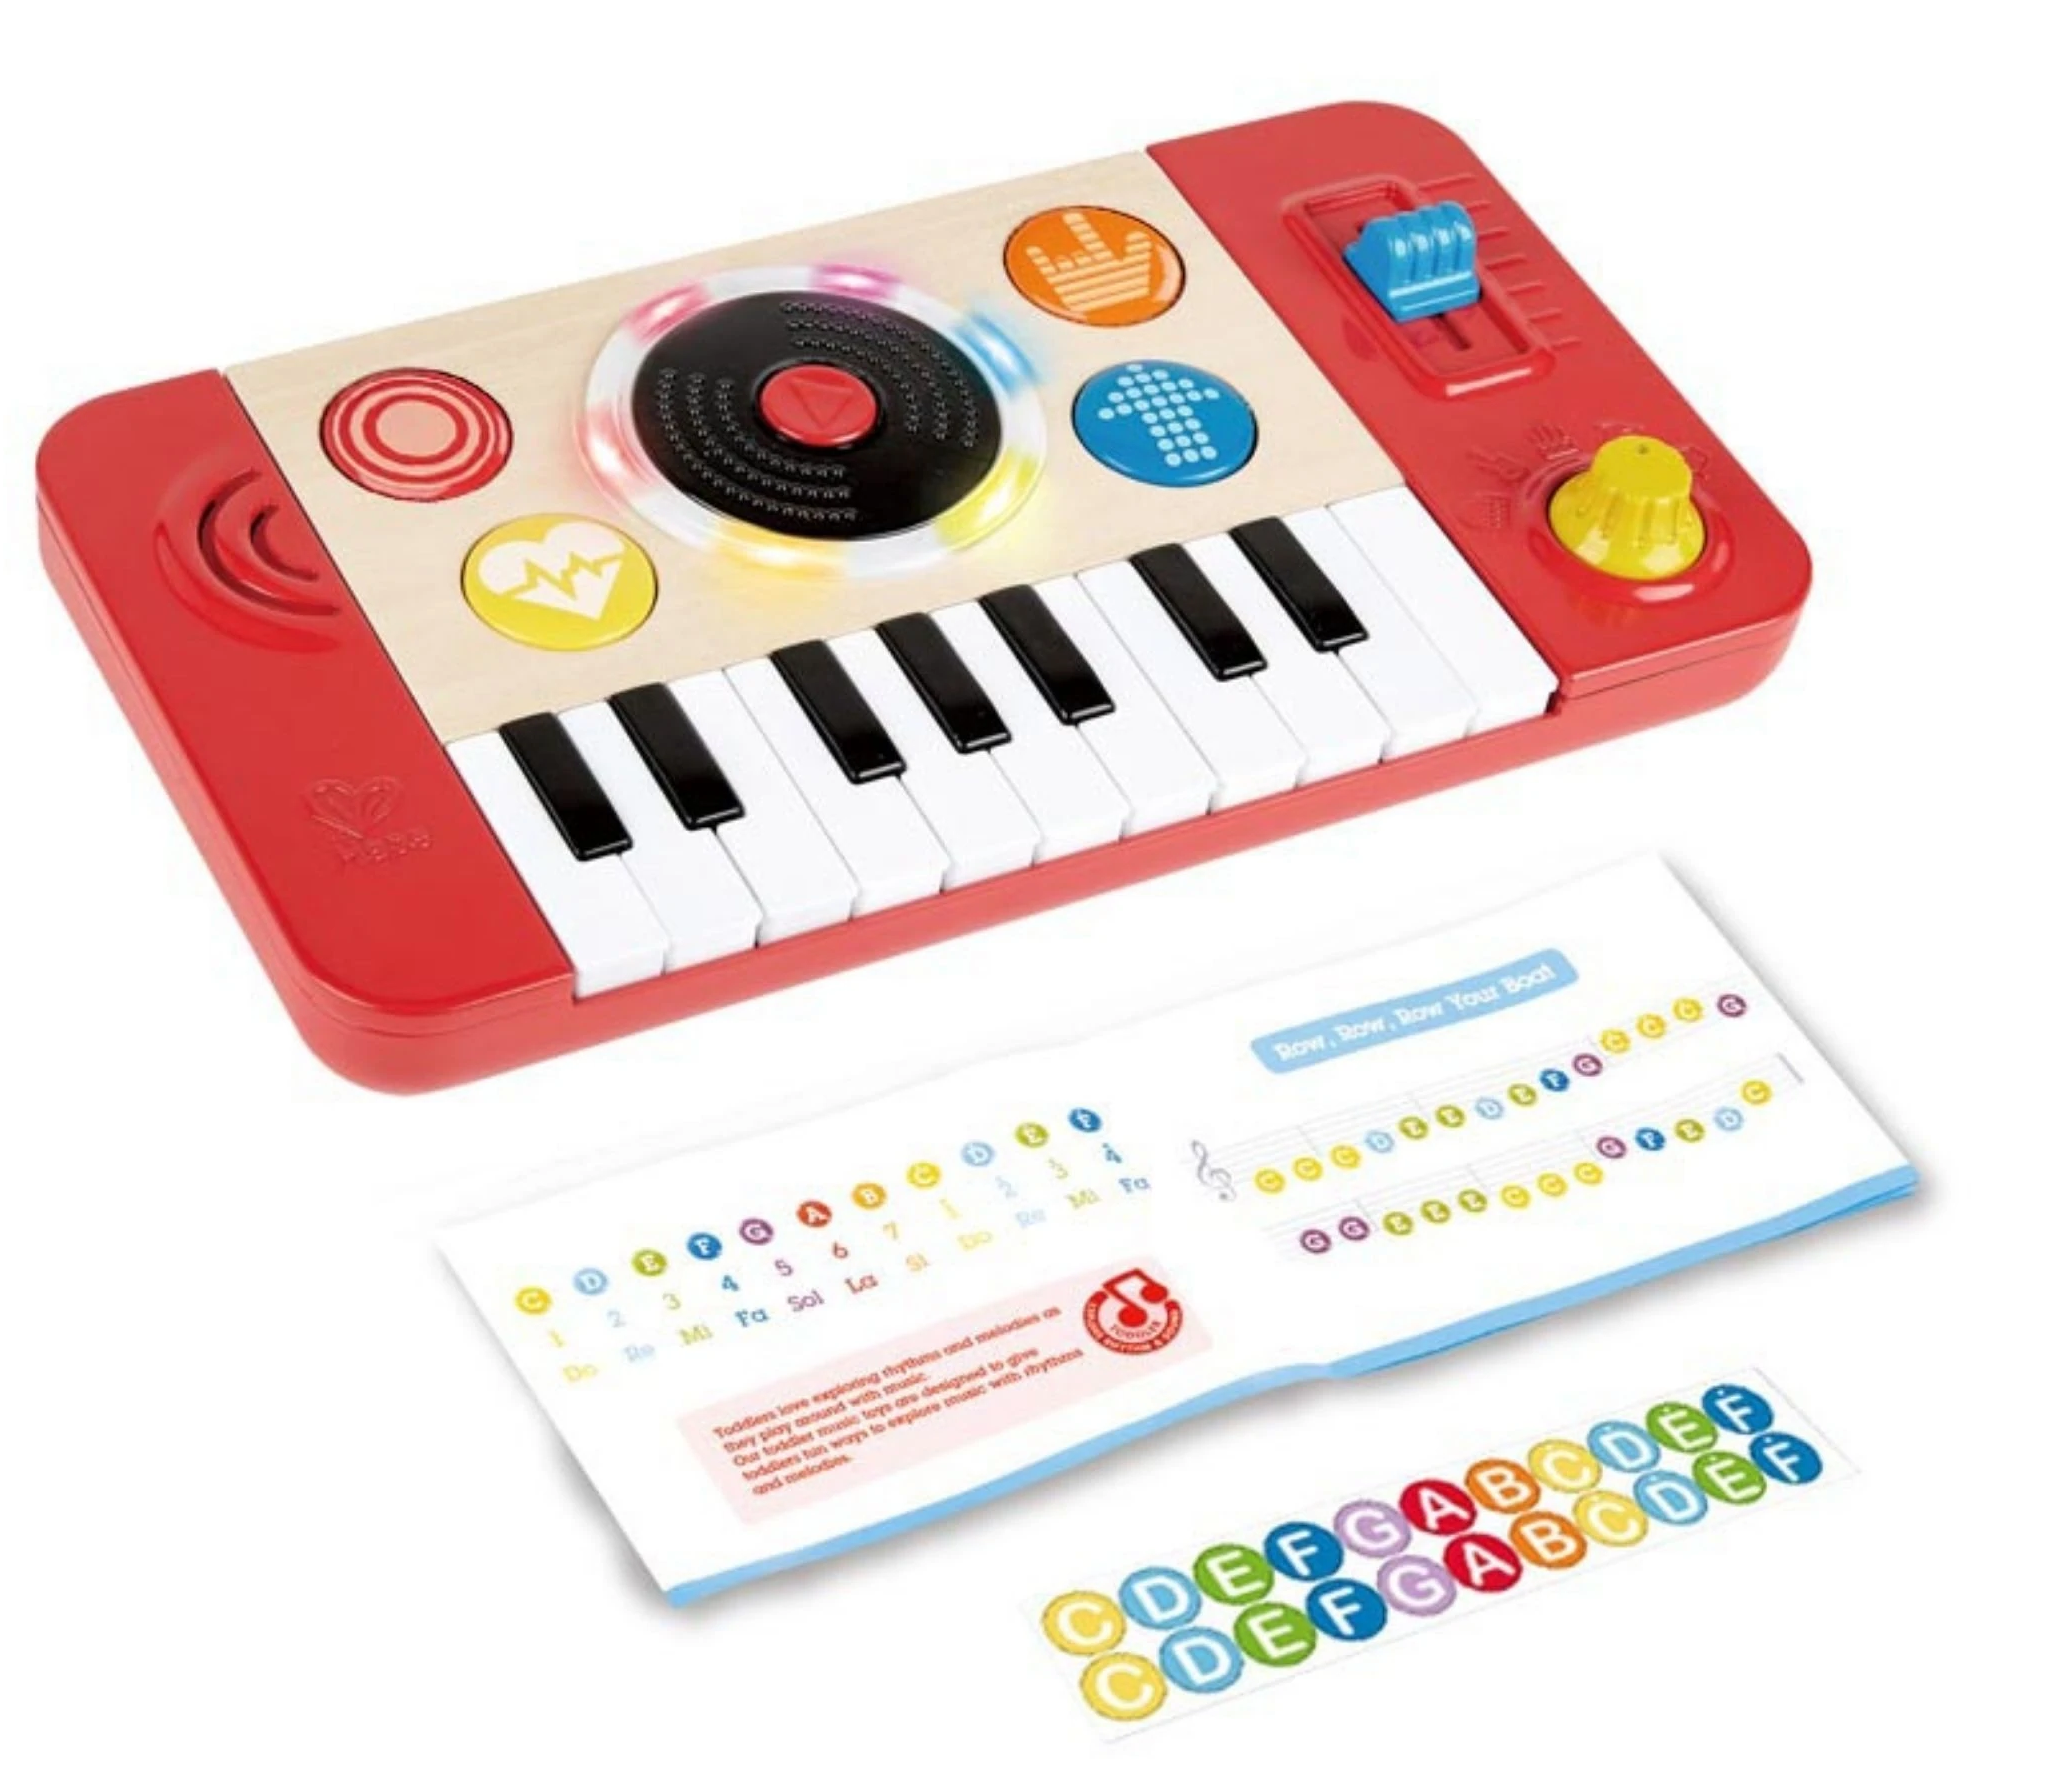 K mixážnímu pultu Hape Mix and Spin Studio je dodáván booklet s jednoduchými písničkami a nálepky pro snadnou orientaci na klaviatuře podle barev.